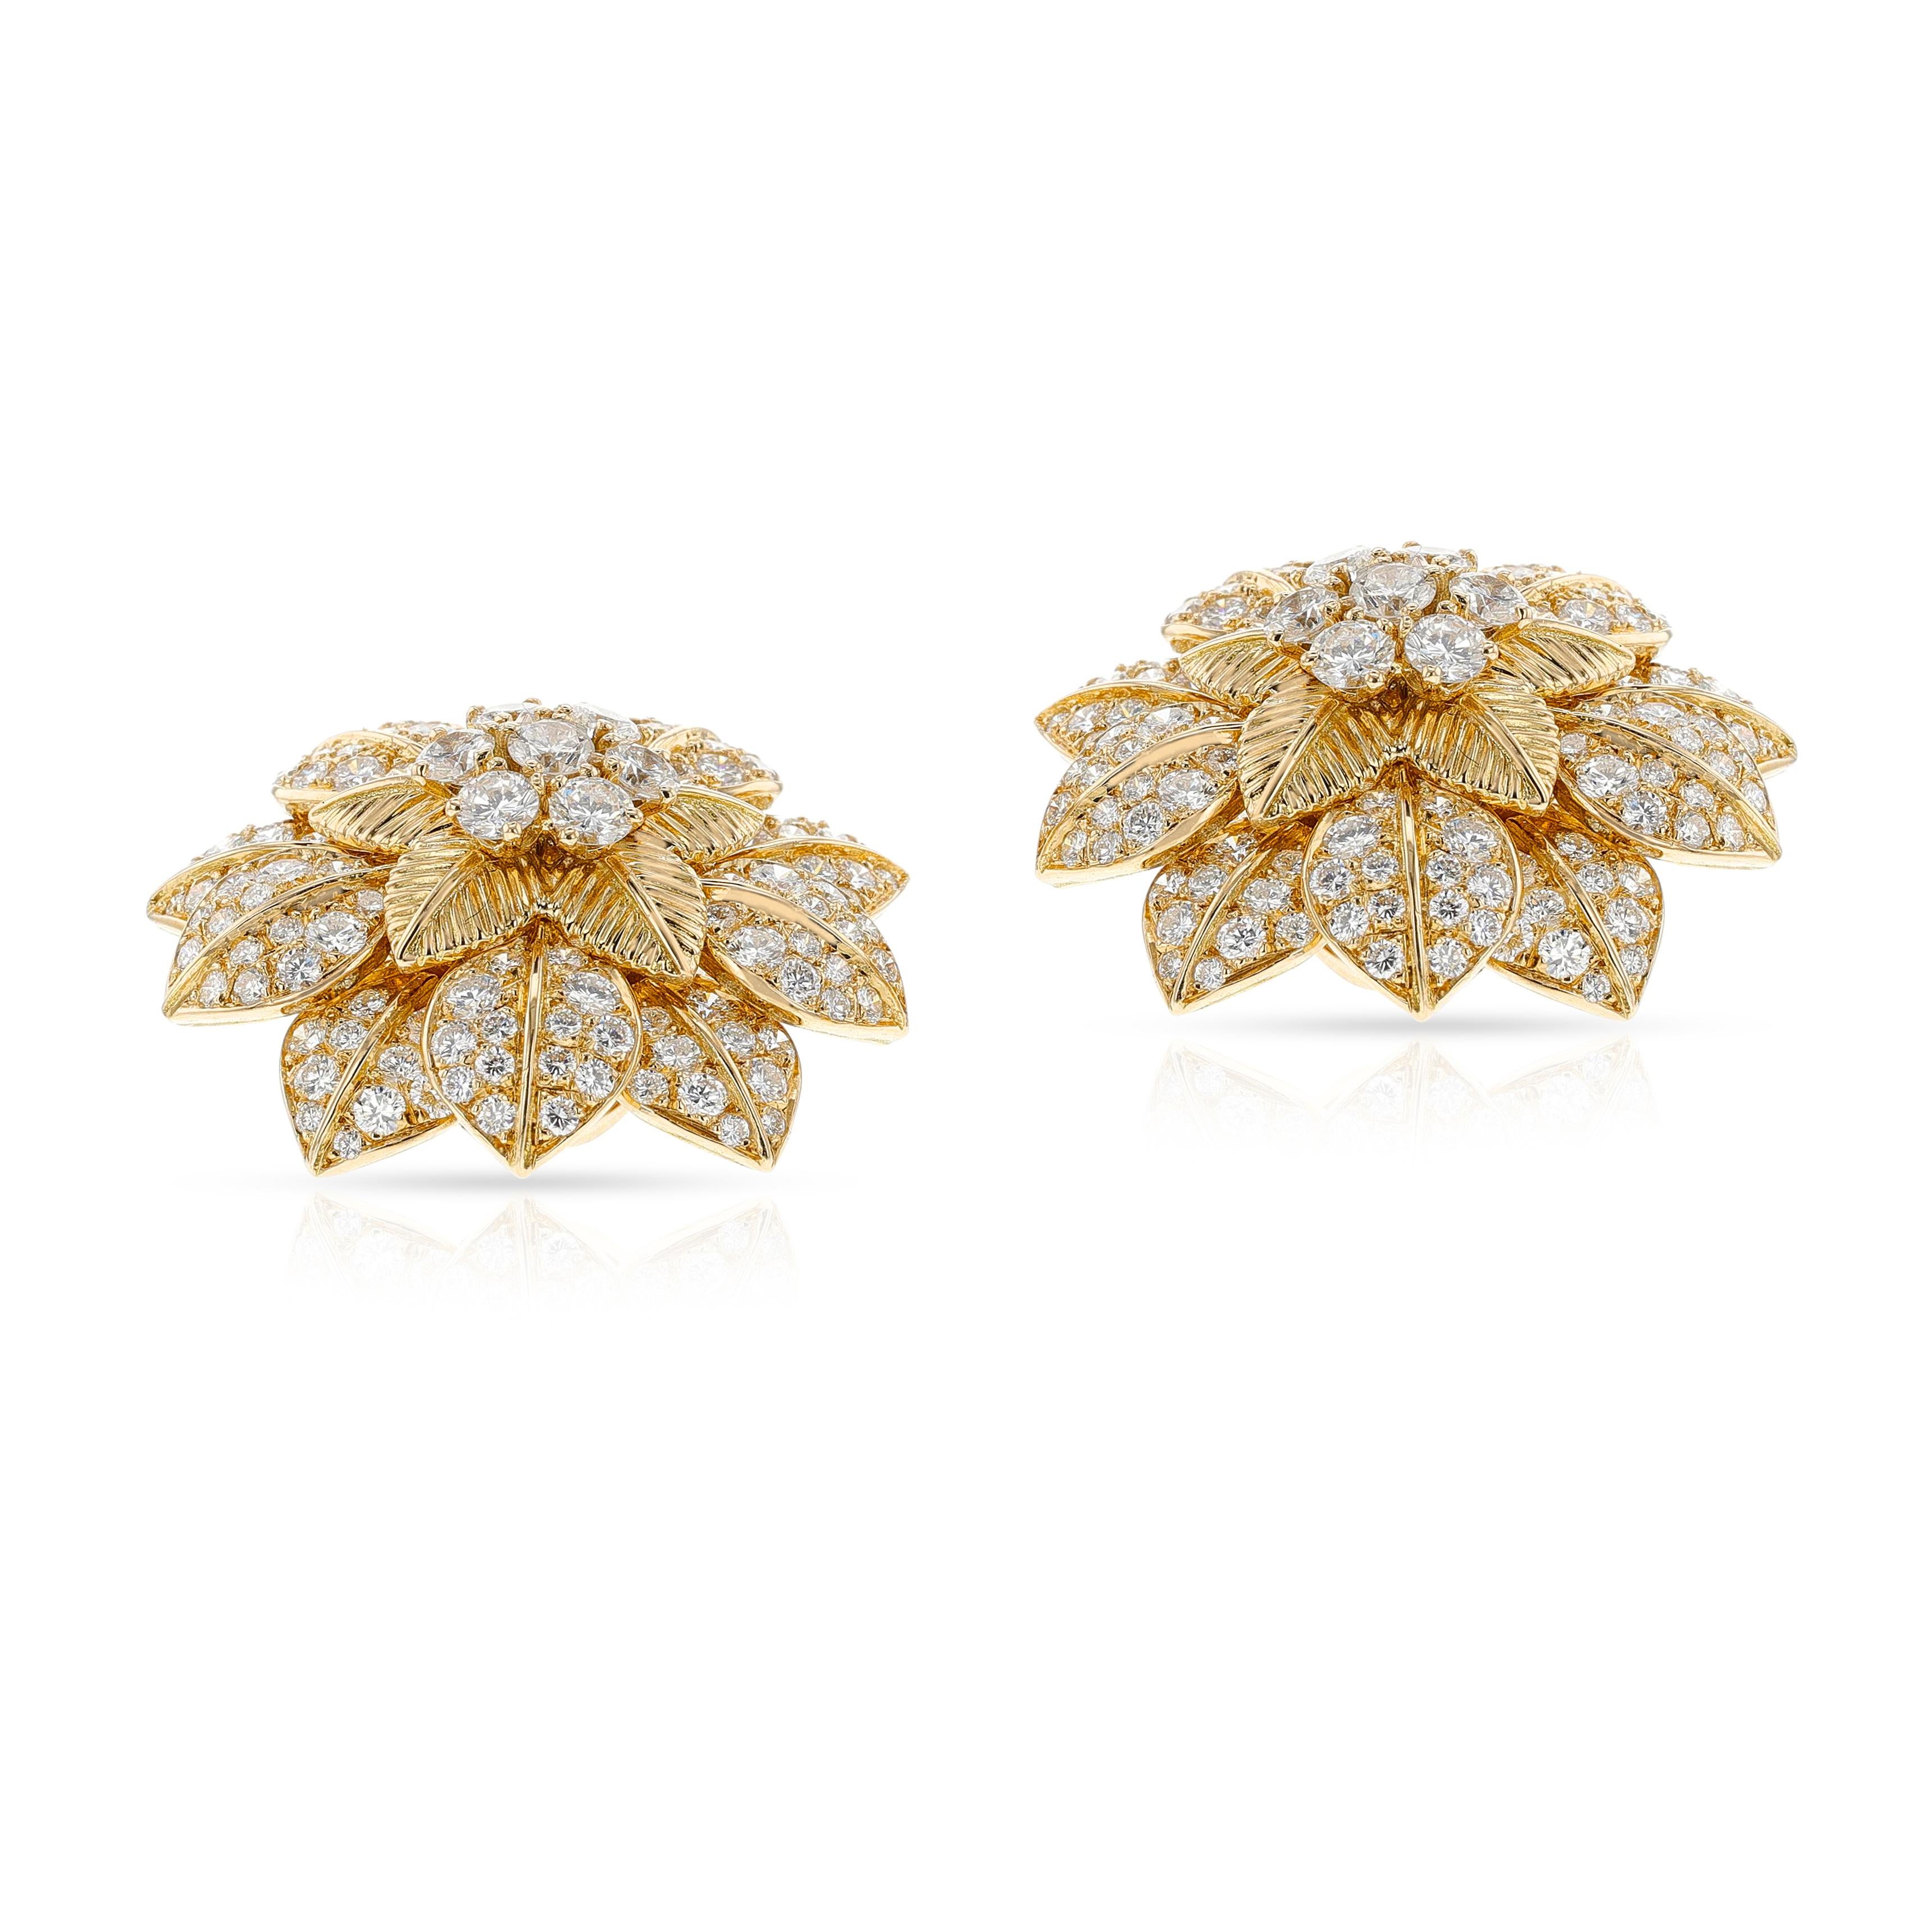 1960er Van Cleef & Arpels French Flower Diamond Petal Ohrringe. Signiert und nummeriert M39112. Diamant Gewicht ca. 10,50 cts. 1,25 Zoll. Gesamtgewicht: 
32,80 Gramm.

SERVICEPAPIER VON NY BOUTIQUE DTD. 20. OKTOBER 2023